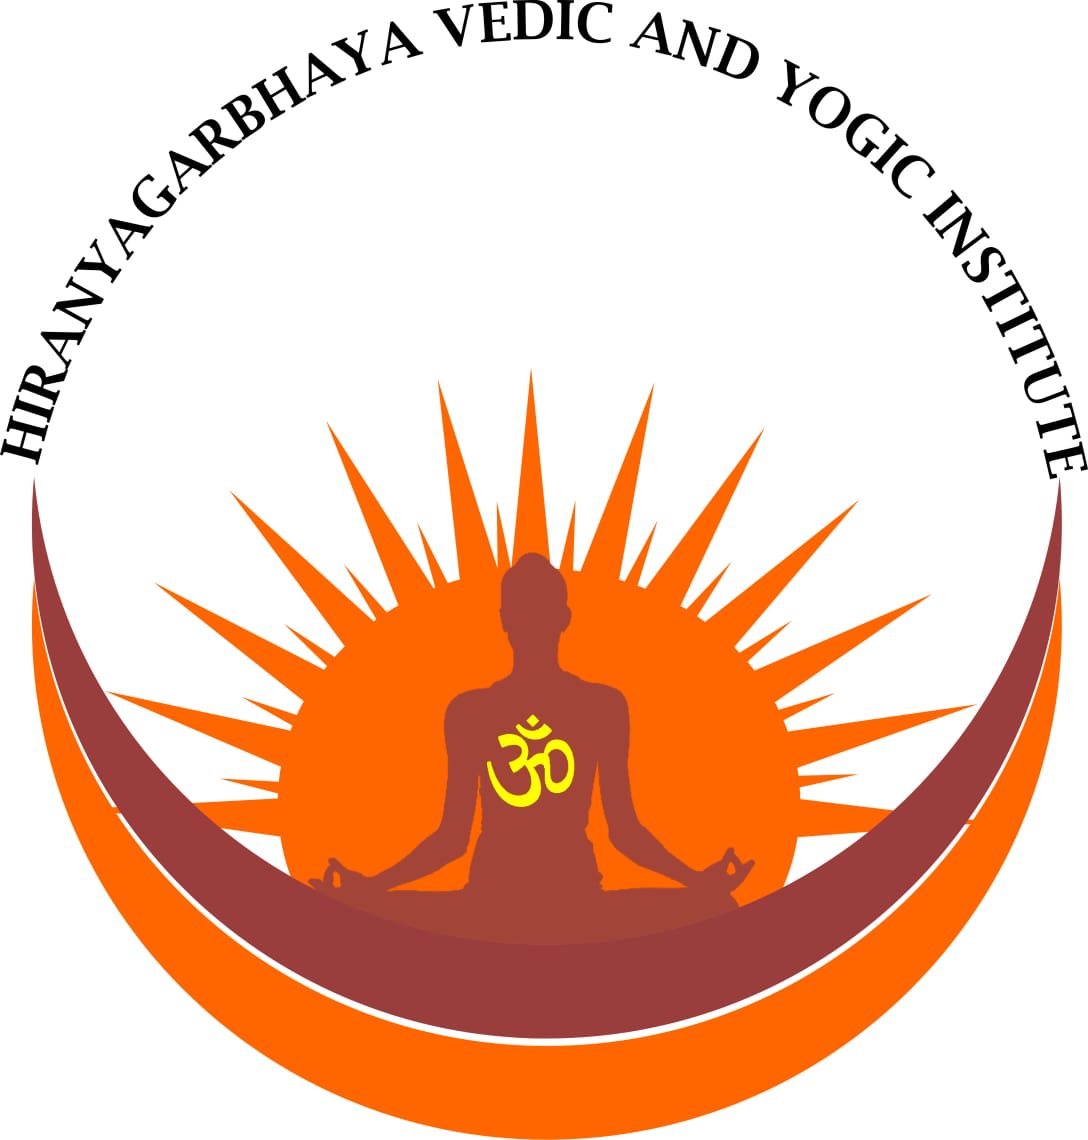 Hiranyagarbhaya Vedic And Yogic Institute